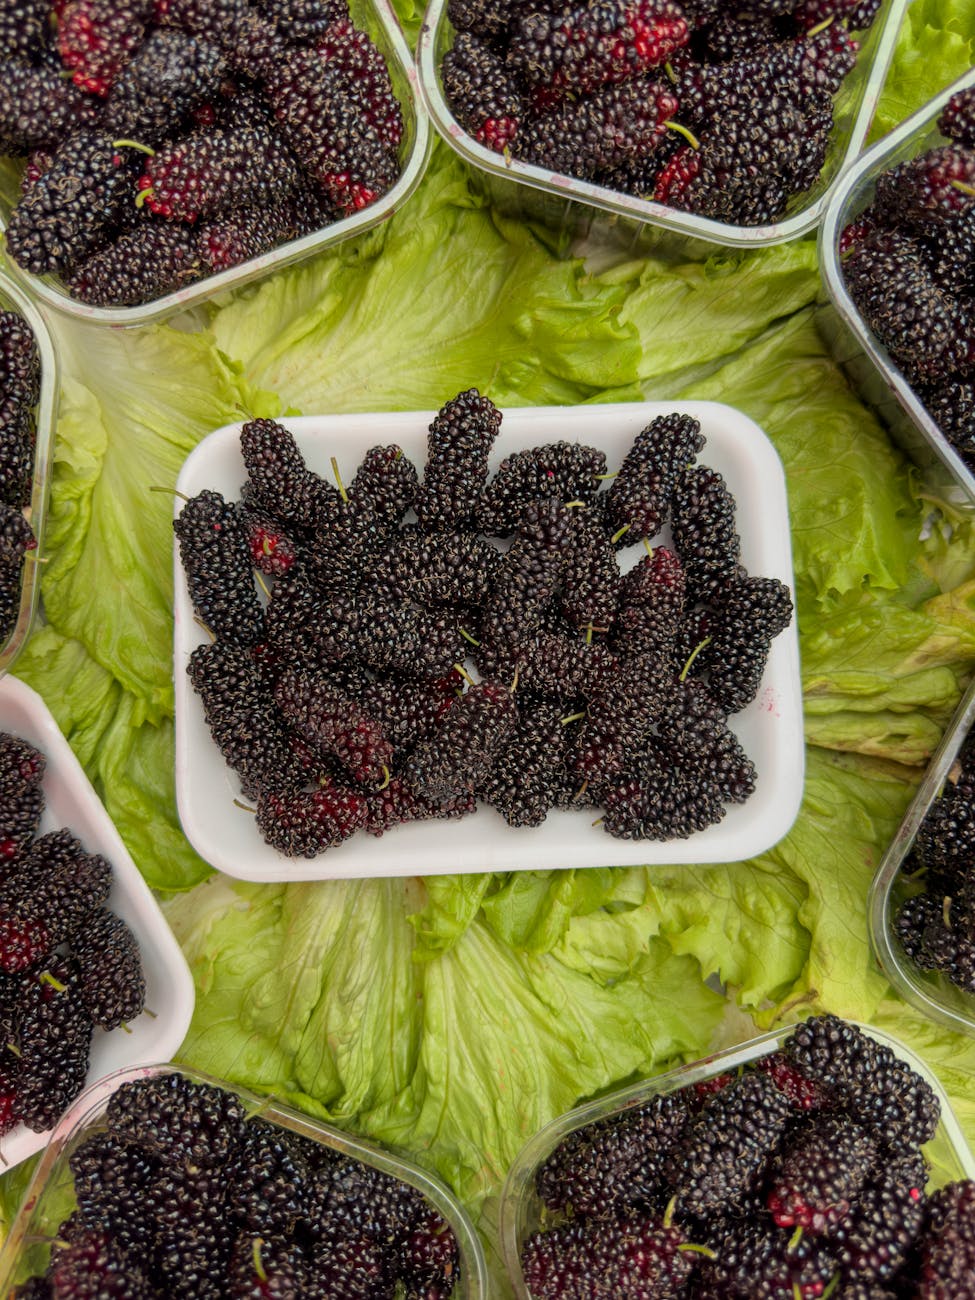 How Long Do Mulberries Last In The Fridge? | Fridge.com